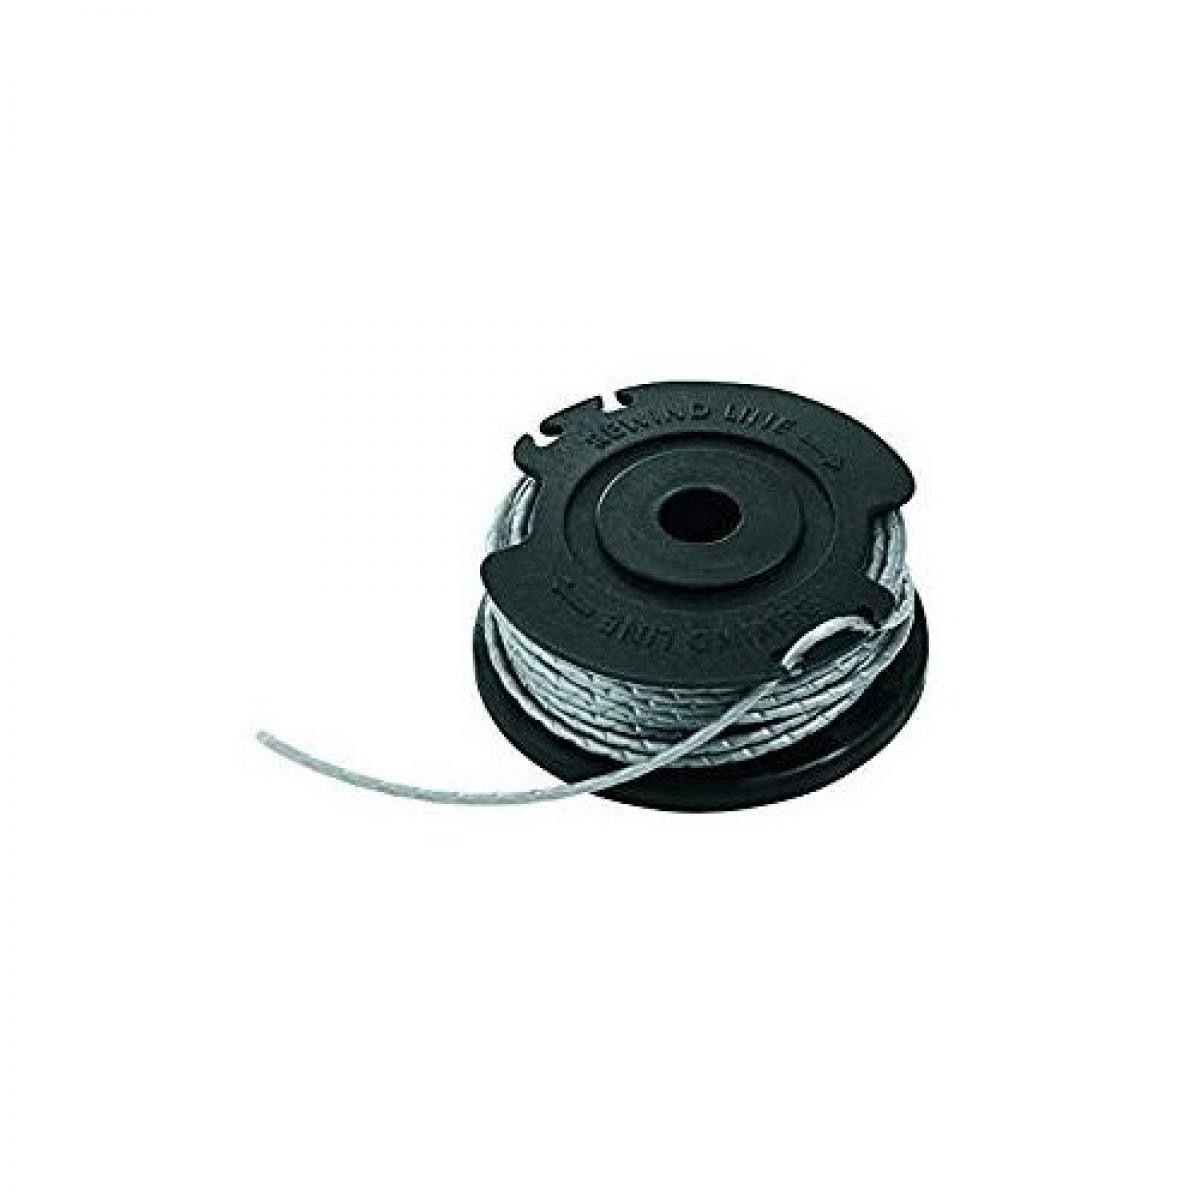 Bosch - Recharge et bobine de fil intégrée 6 m Ø 1.6 mm pour coupe-bordures ART 24, 27, 30 & ART 30-36 LI Bosch F016800351 - Coupe-bordures